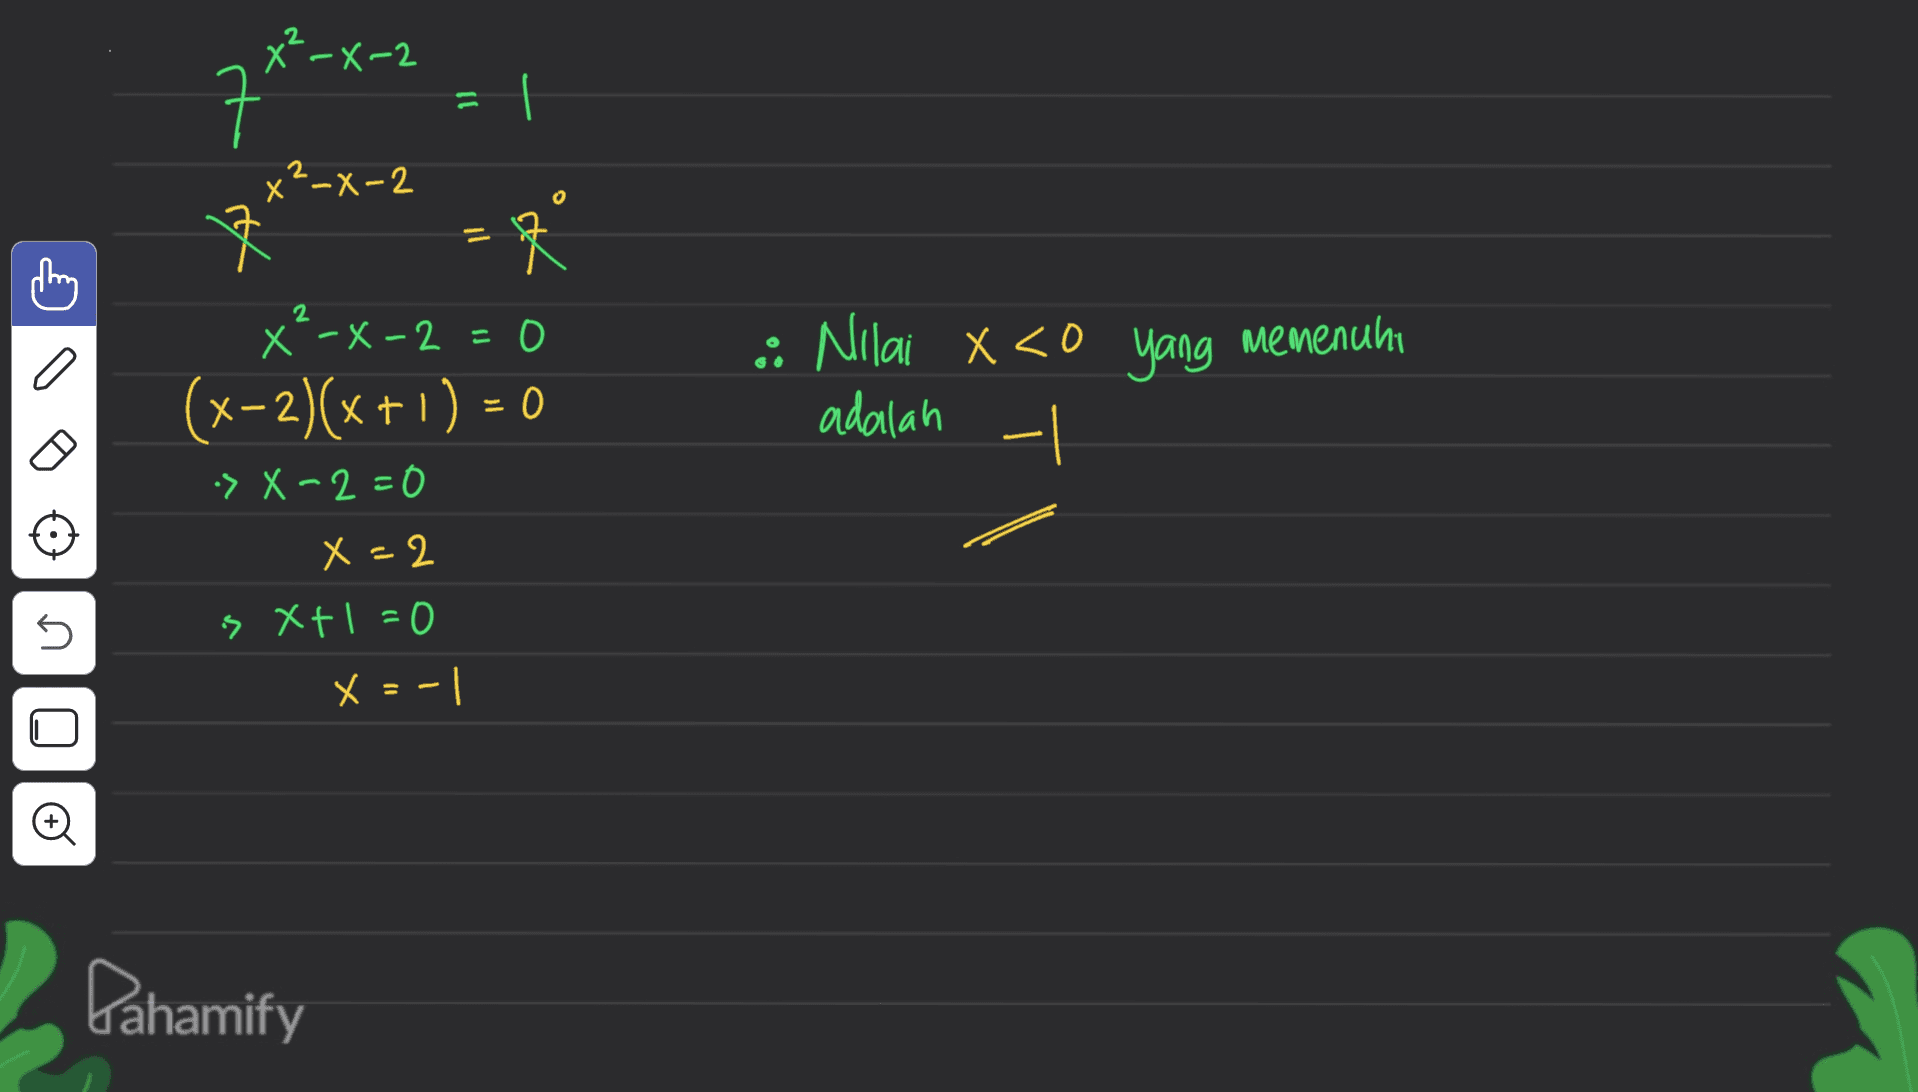 77²-x-2 Il 文 7 - x²-x-2 * x²-x-2=0 (x-2)(x + 1) = 0 •> X-2 = 0 X=2 s xt1=0 x = -1 :: Nilai x <0 yang memenuhi adalah 5 U O Pahamify 